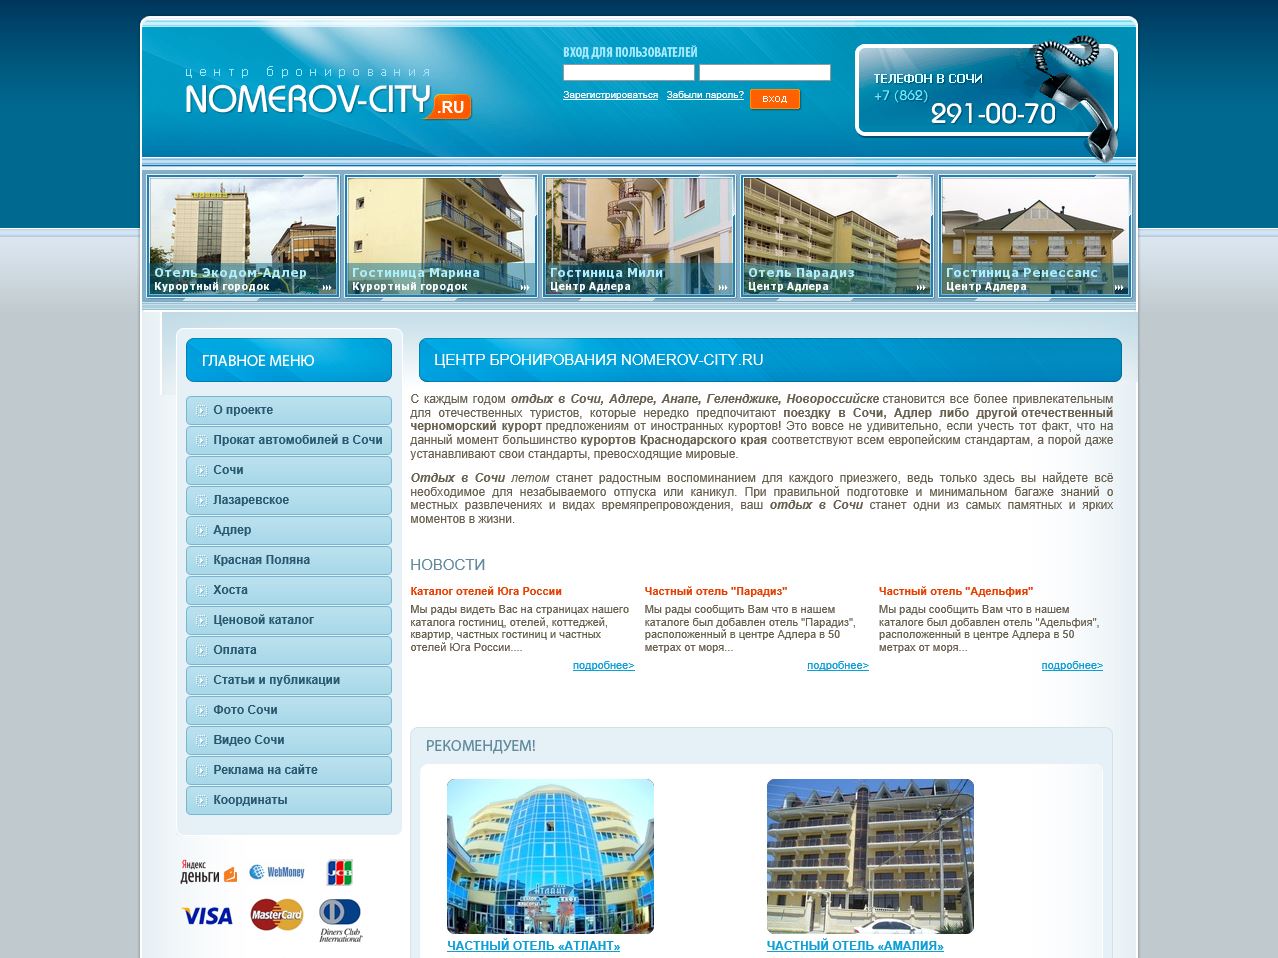 Центр бронирования Nomerov-City